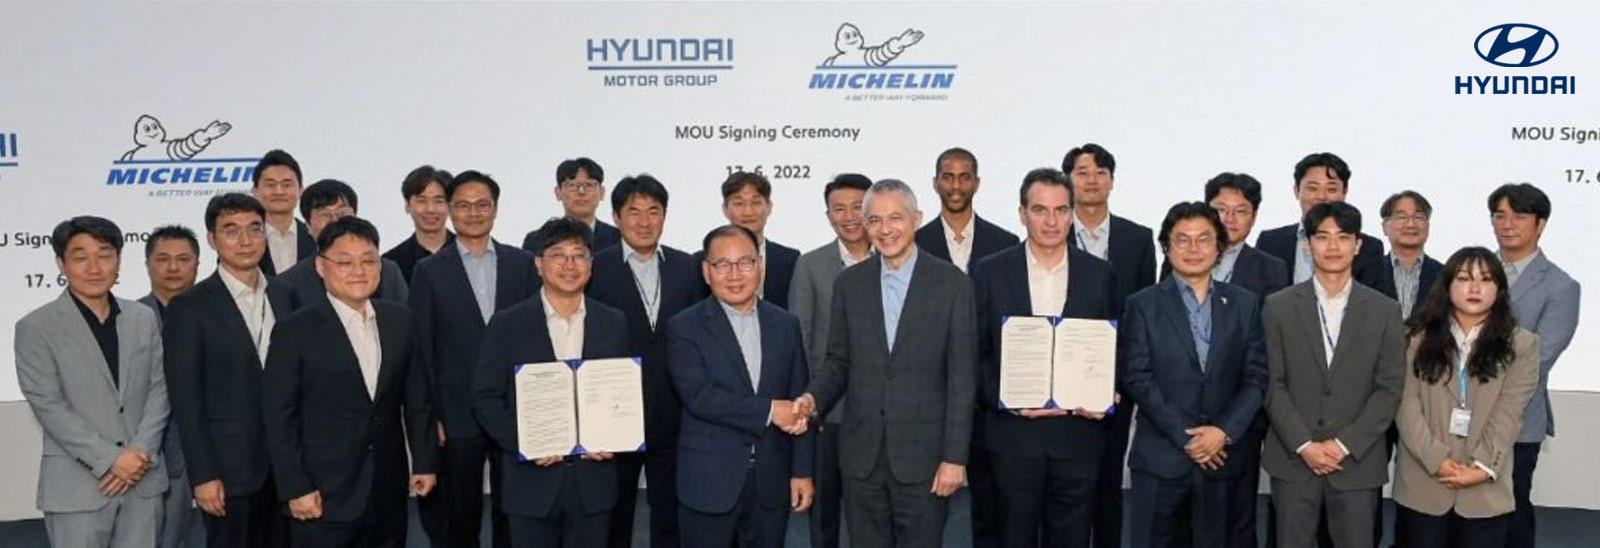 Ejecutivos de Hyundai y Michelin mostrando carpeta con acuerdo y en fila para fotografía